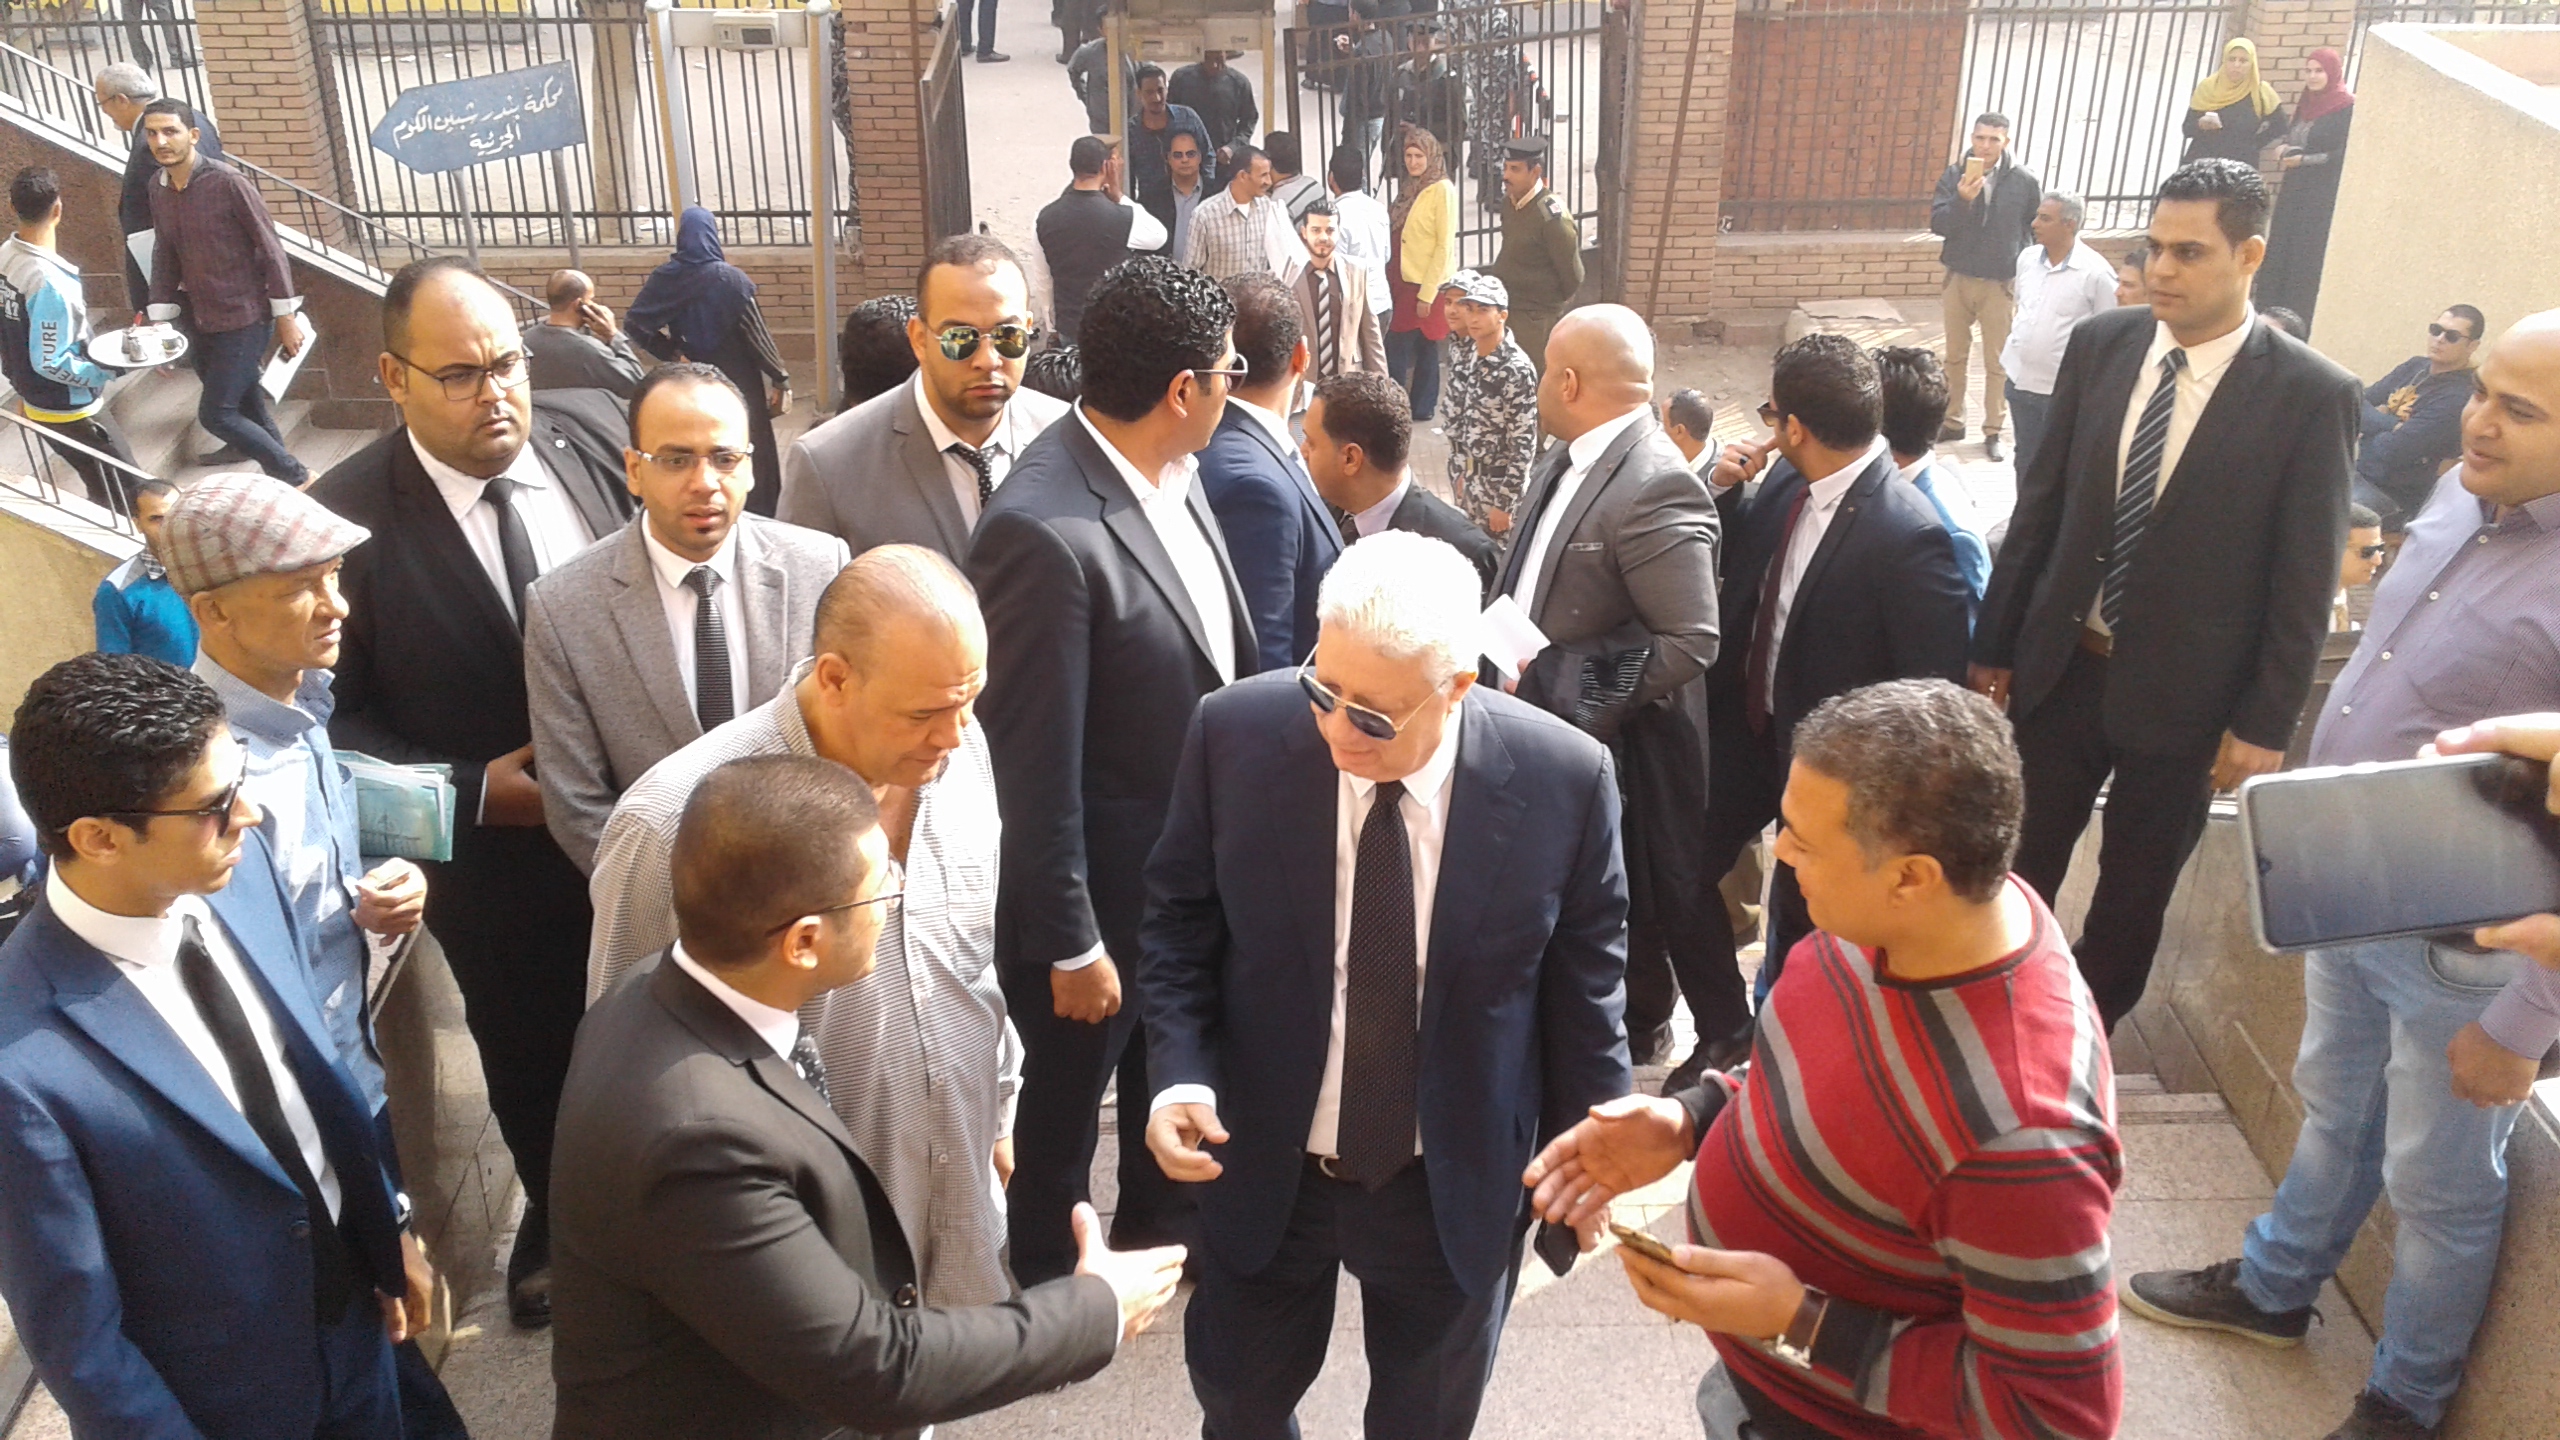 وصول مرتضى منصور لمحكمة شبين الكوم (3)